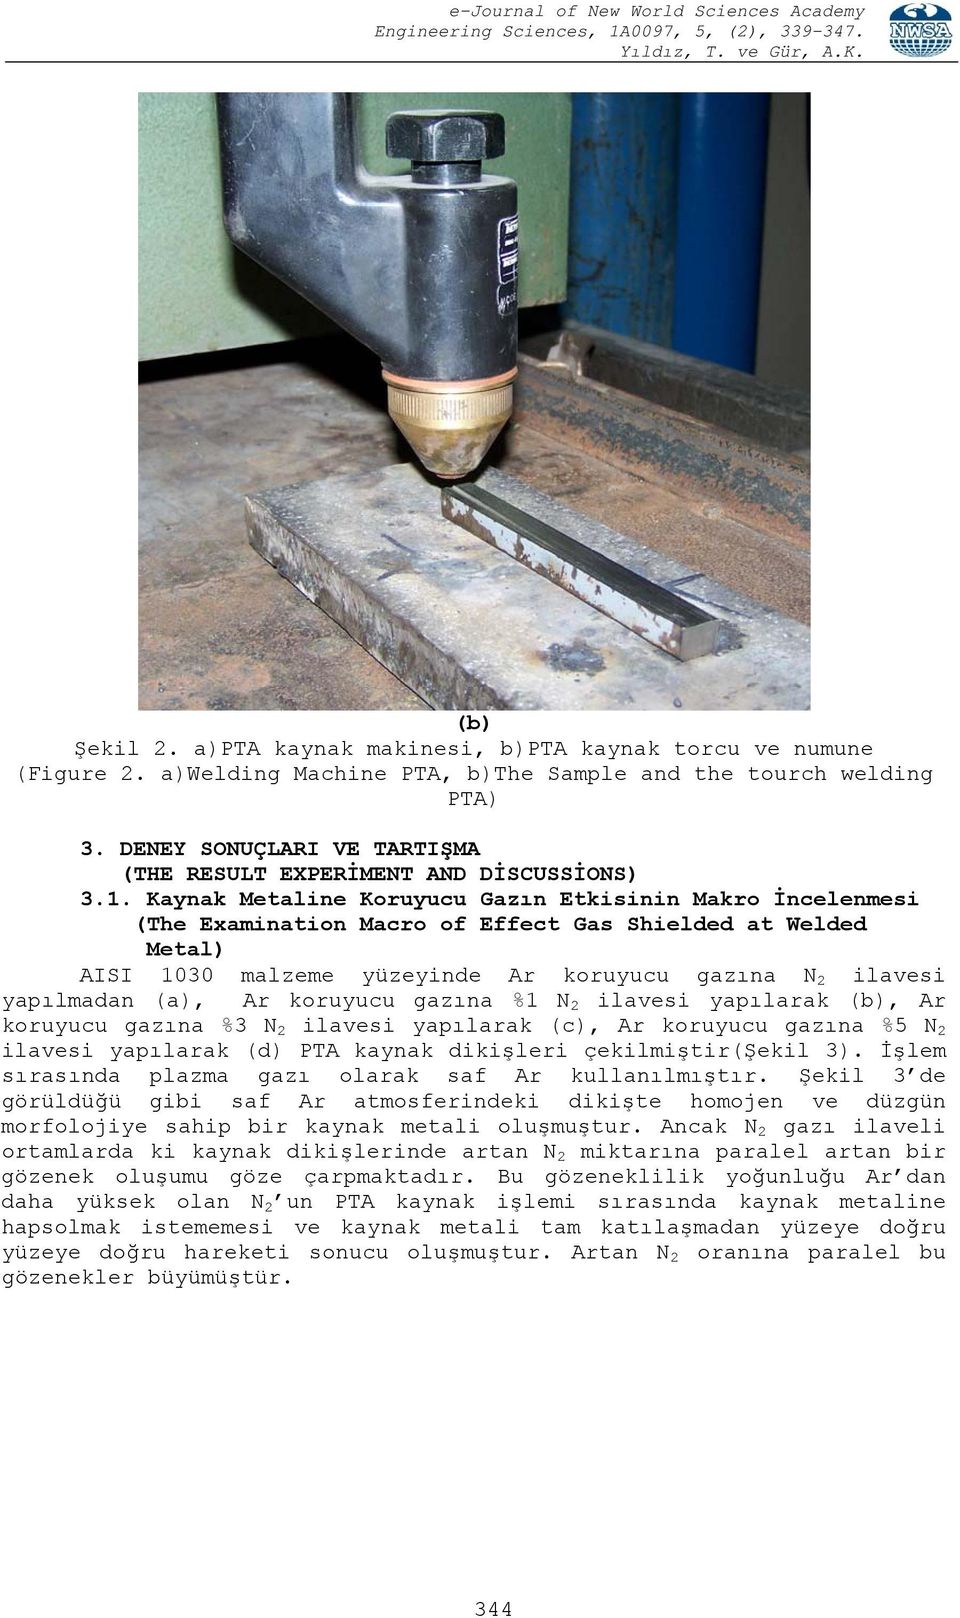 Kaynak Metaline Koruyucu Gazın Etkisinin Makro İncelenmesi (The Examination Macro of Effect Gas Shielded at Welded Metal) AISI 1030 malzeme yüzeyinde Ar koruyucu gazına N 2 ilavesi yapılmadan (a), Ar